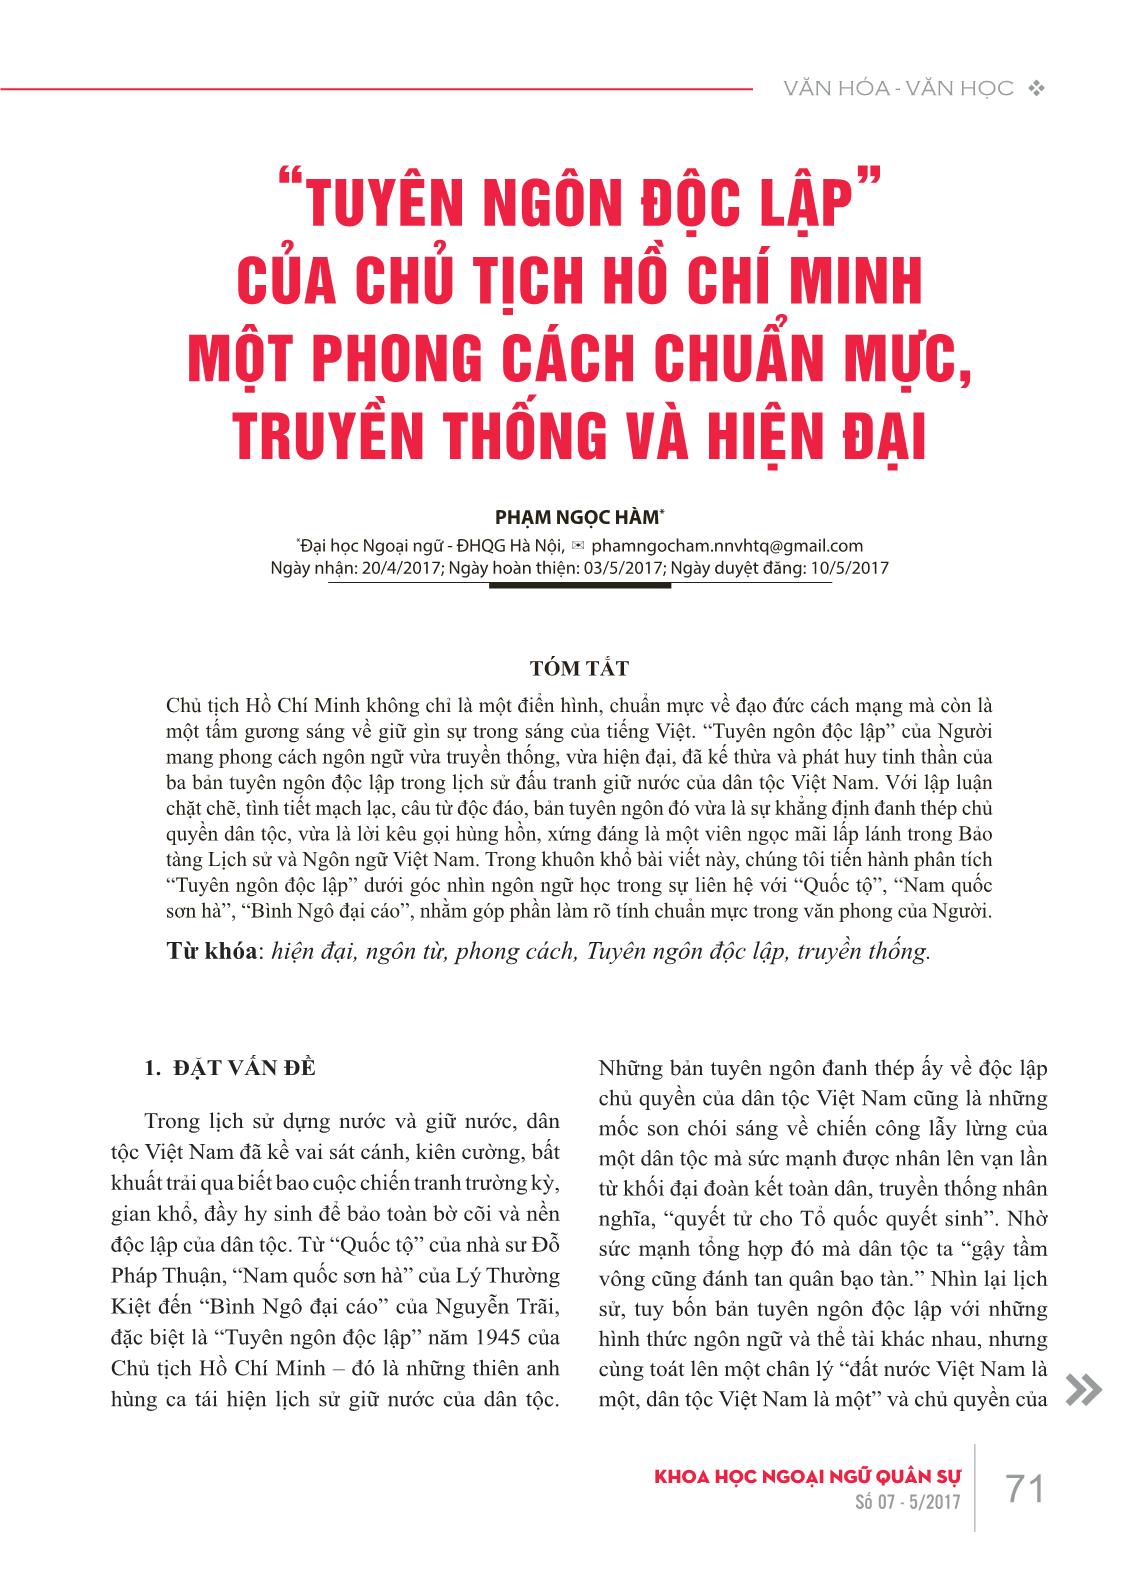 “Tuyên ngôn độc lập” của Chủ tịch Hồ Chí Minh một phong cách chuẩn mực, truyền thống và hiện đại trang 1